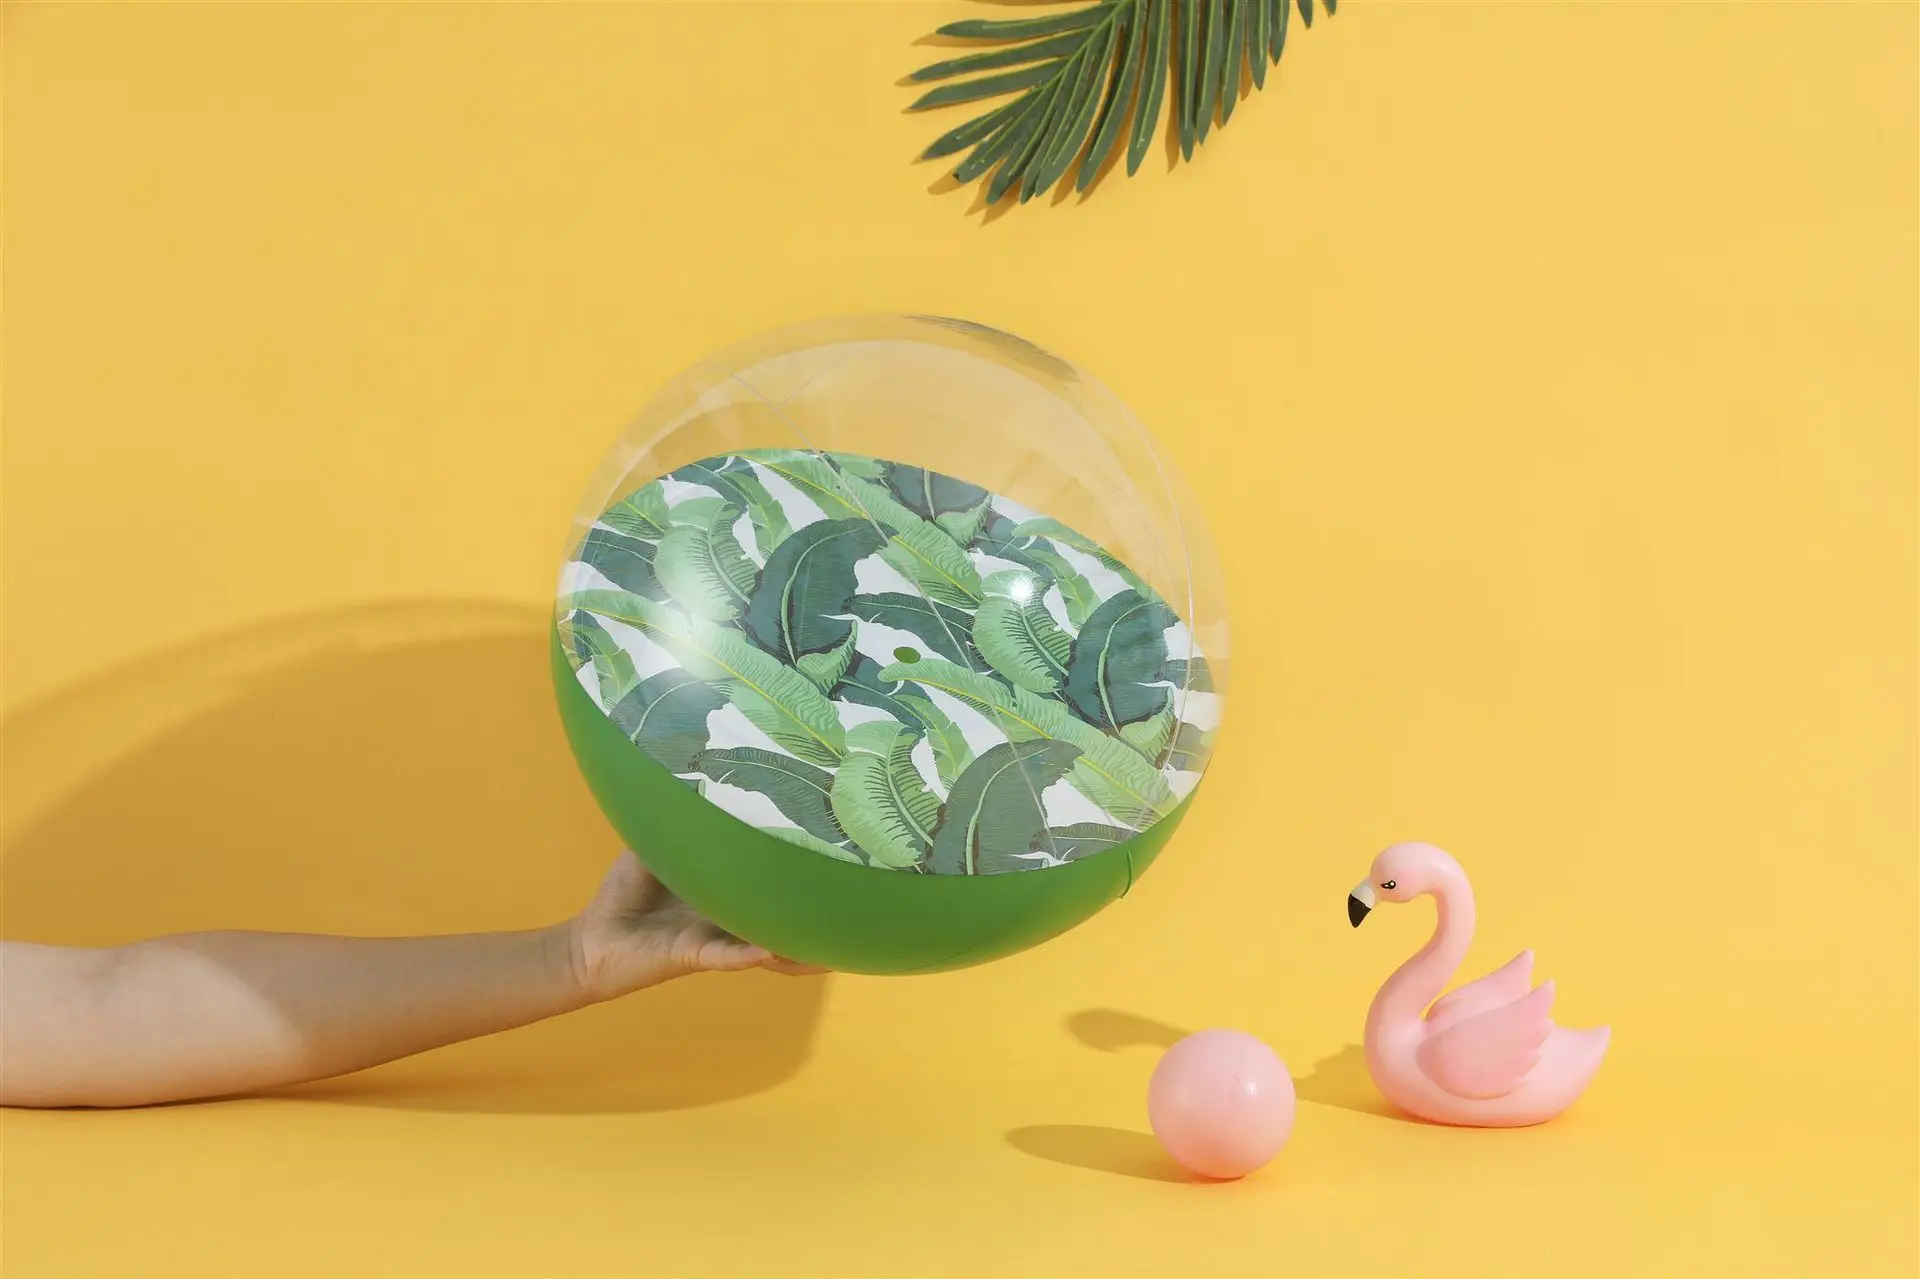 30 см пляжный шар надувной единорог; Фламинго бассейн игрушки поплавок плавать кольцо игрушка для бассейна вечерние воздушные шары с изображением Волейбольного мяча игрушка мяч